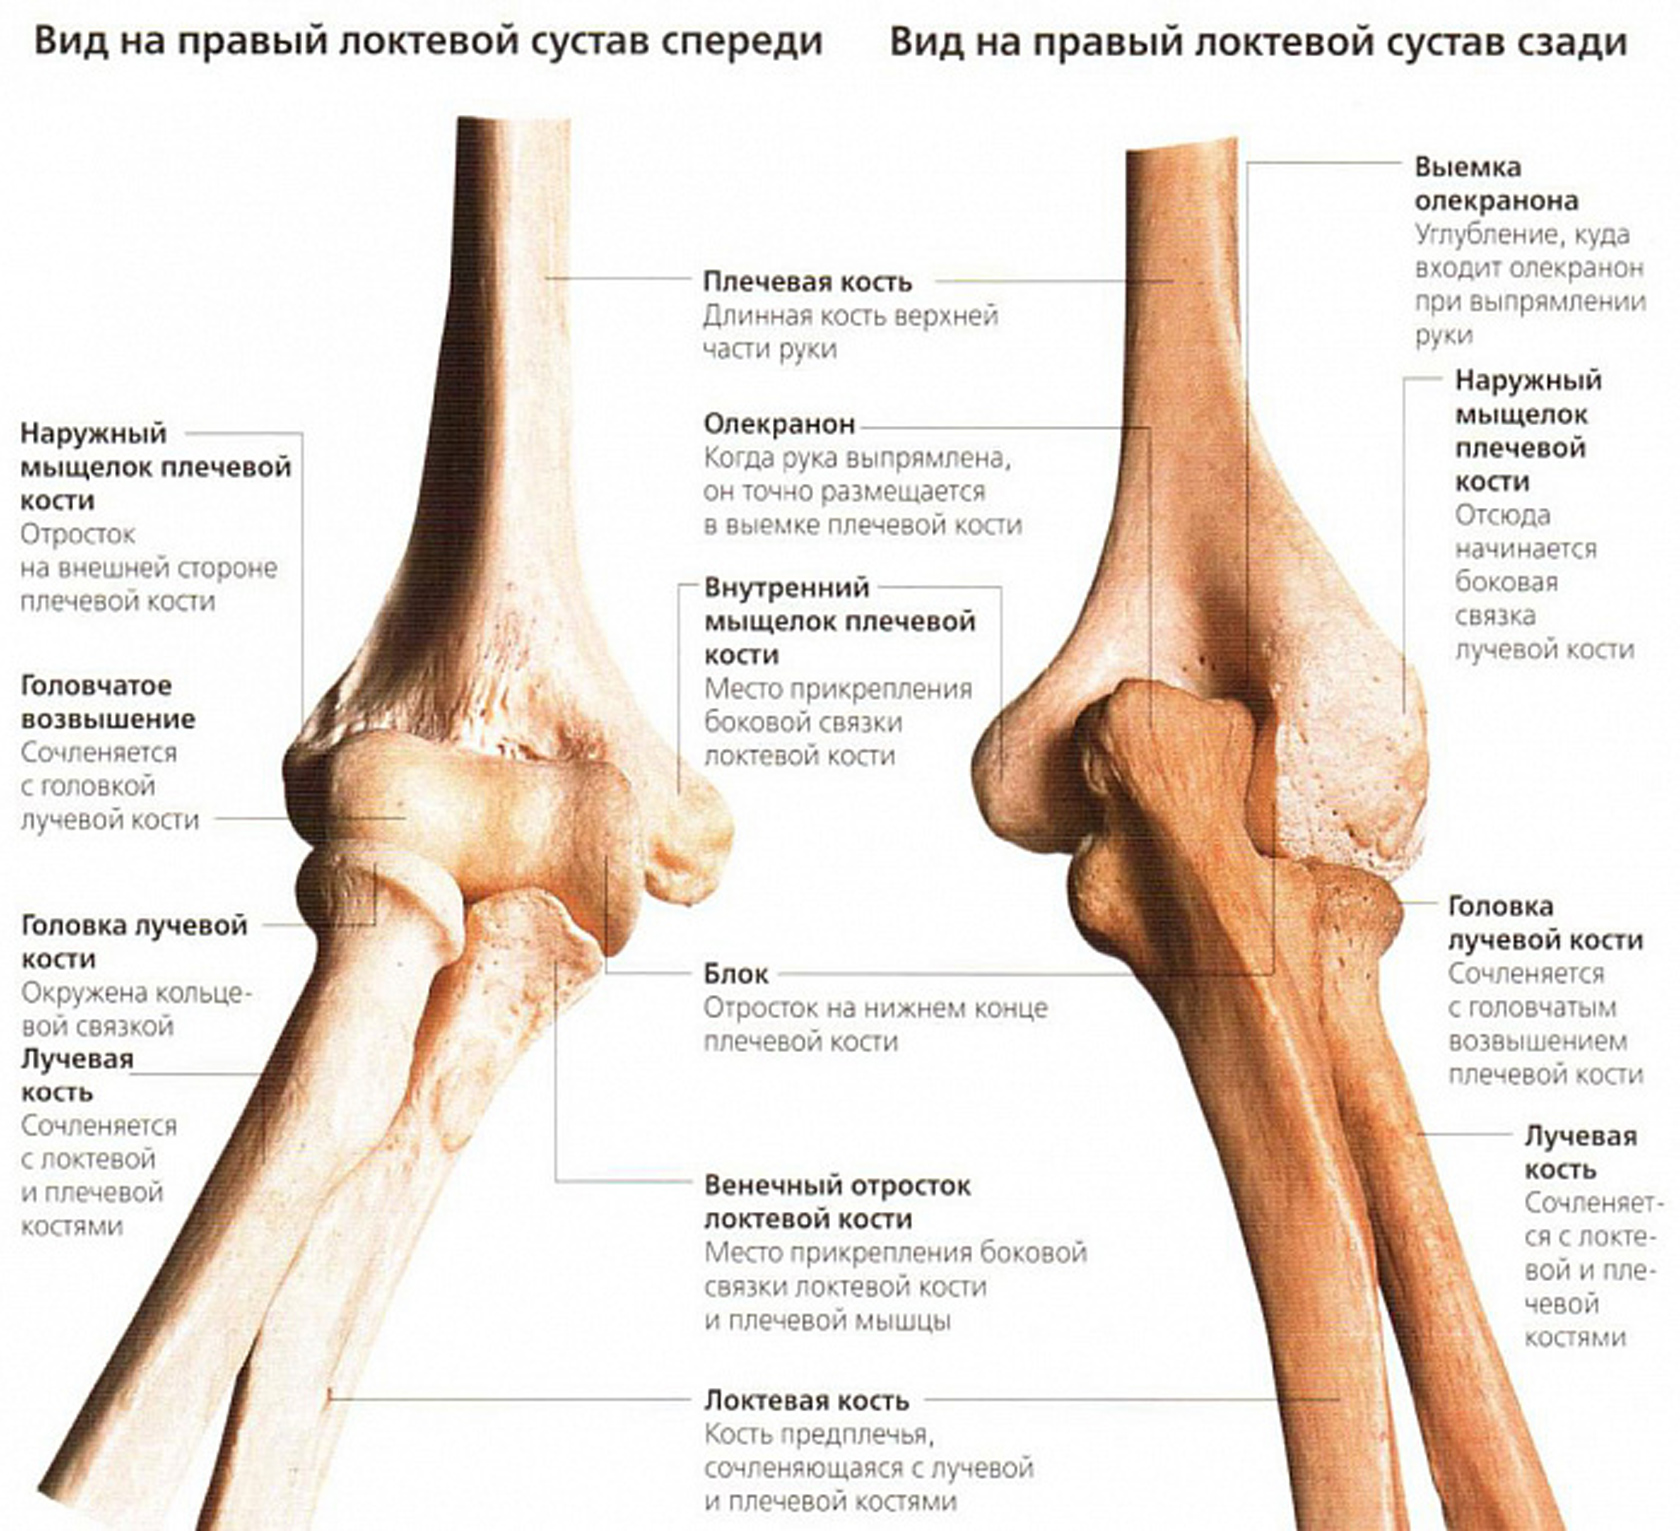 Медиальные мыщелки. Локтевой сустав анатомия строение кости. Венечный отросток локтевого сустава. Плечевая кость анатомия мыщелок. Кости составляющие локтевой сустав.